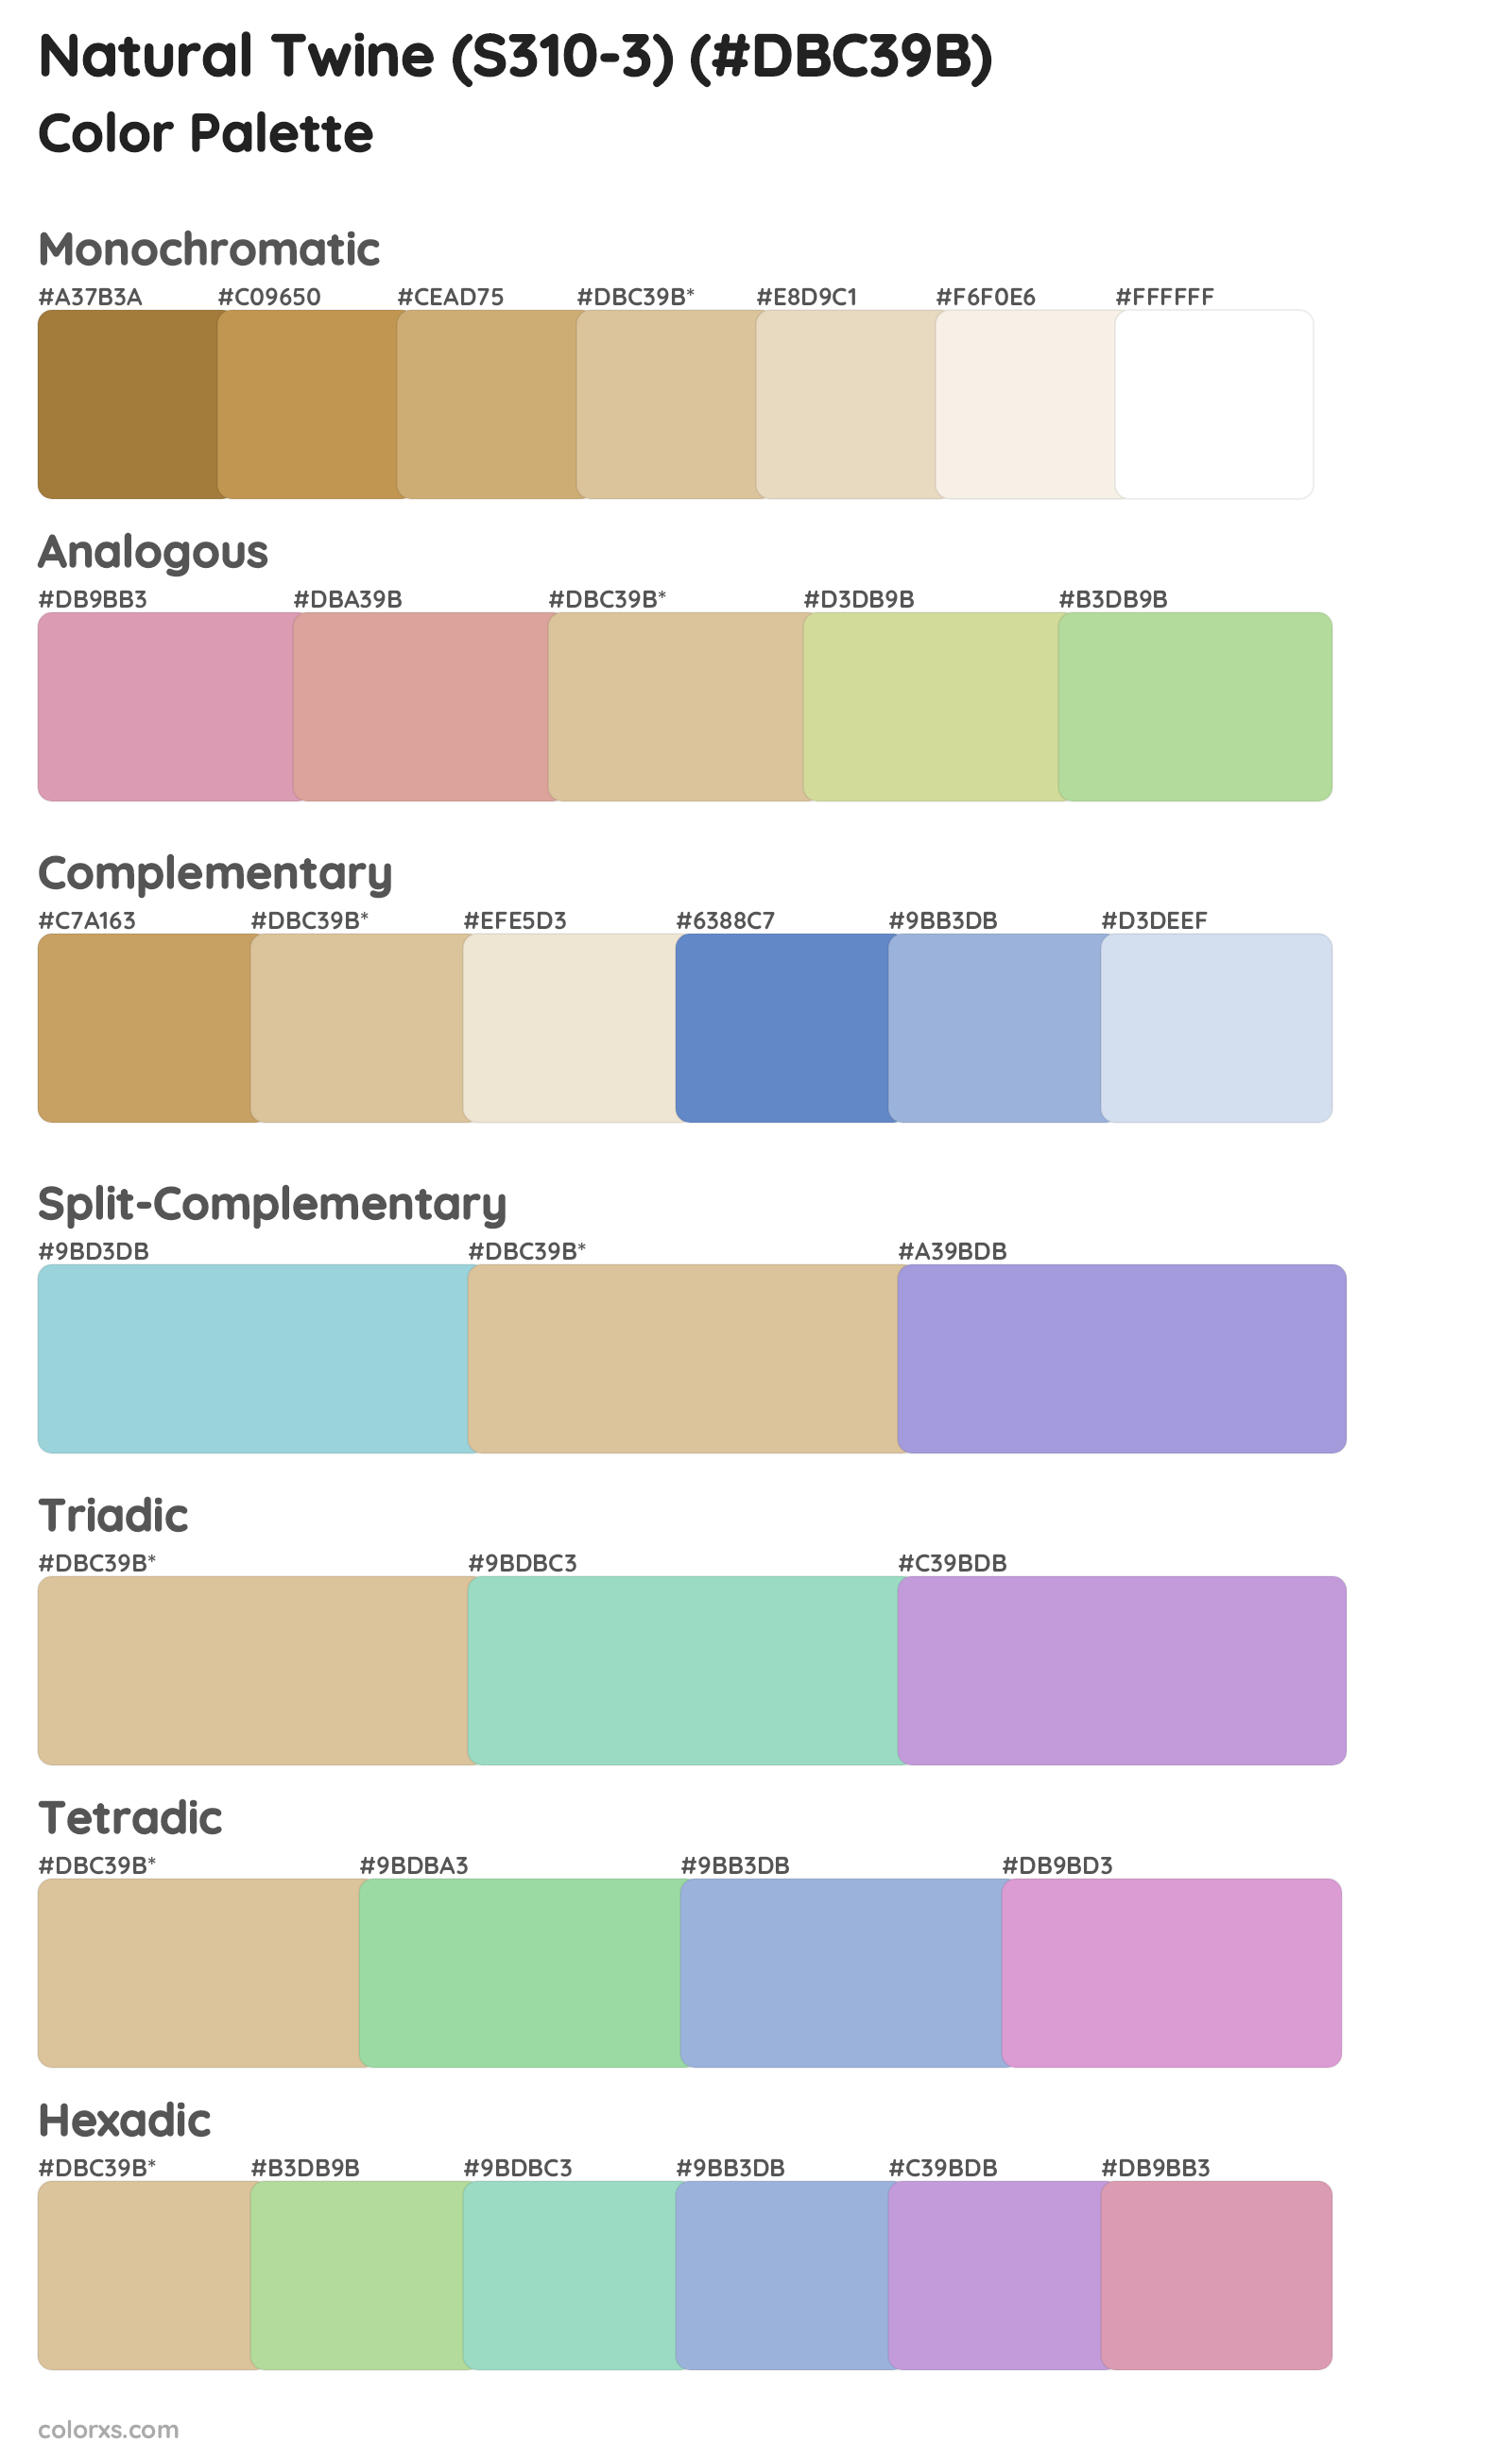 Natural Twine (S310-3) Color Scheme Palettes